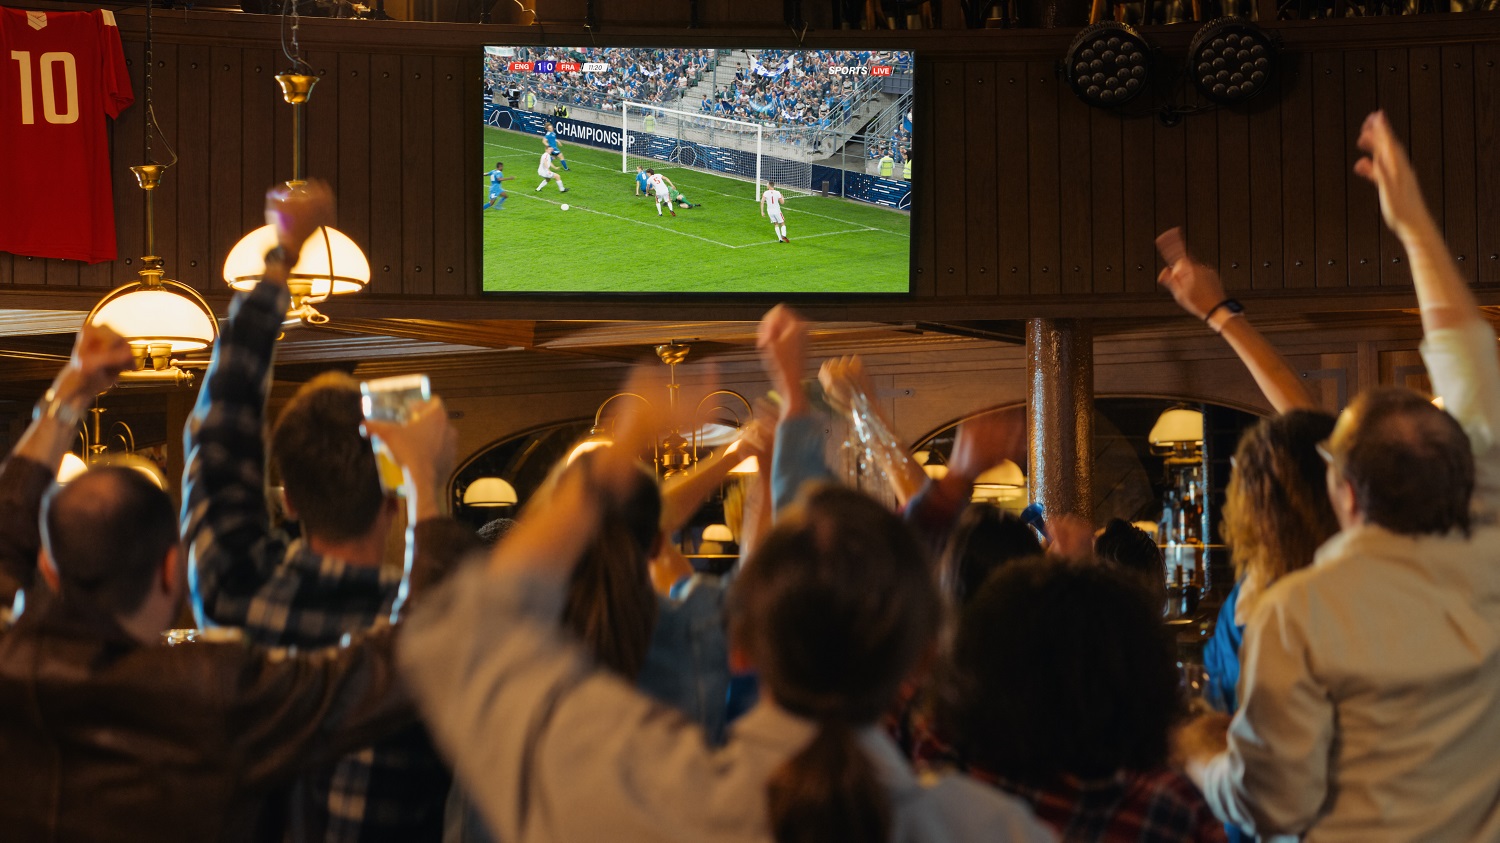 Viele Fußballfans stehen beim Public Viewing zur Europameisterschaft in einer Gastronomie. Sie schauen auf einen großen Fernseher und jubeln für das Team, das gerade ein Tor erzielt.